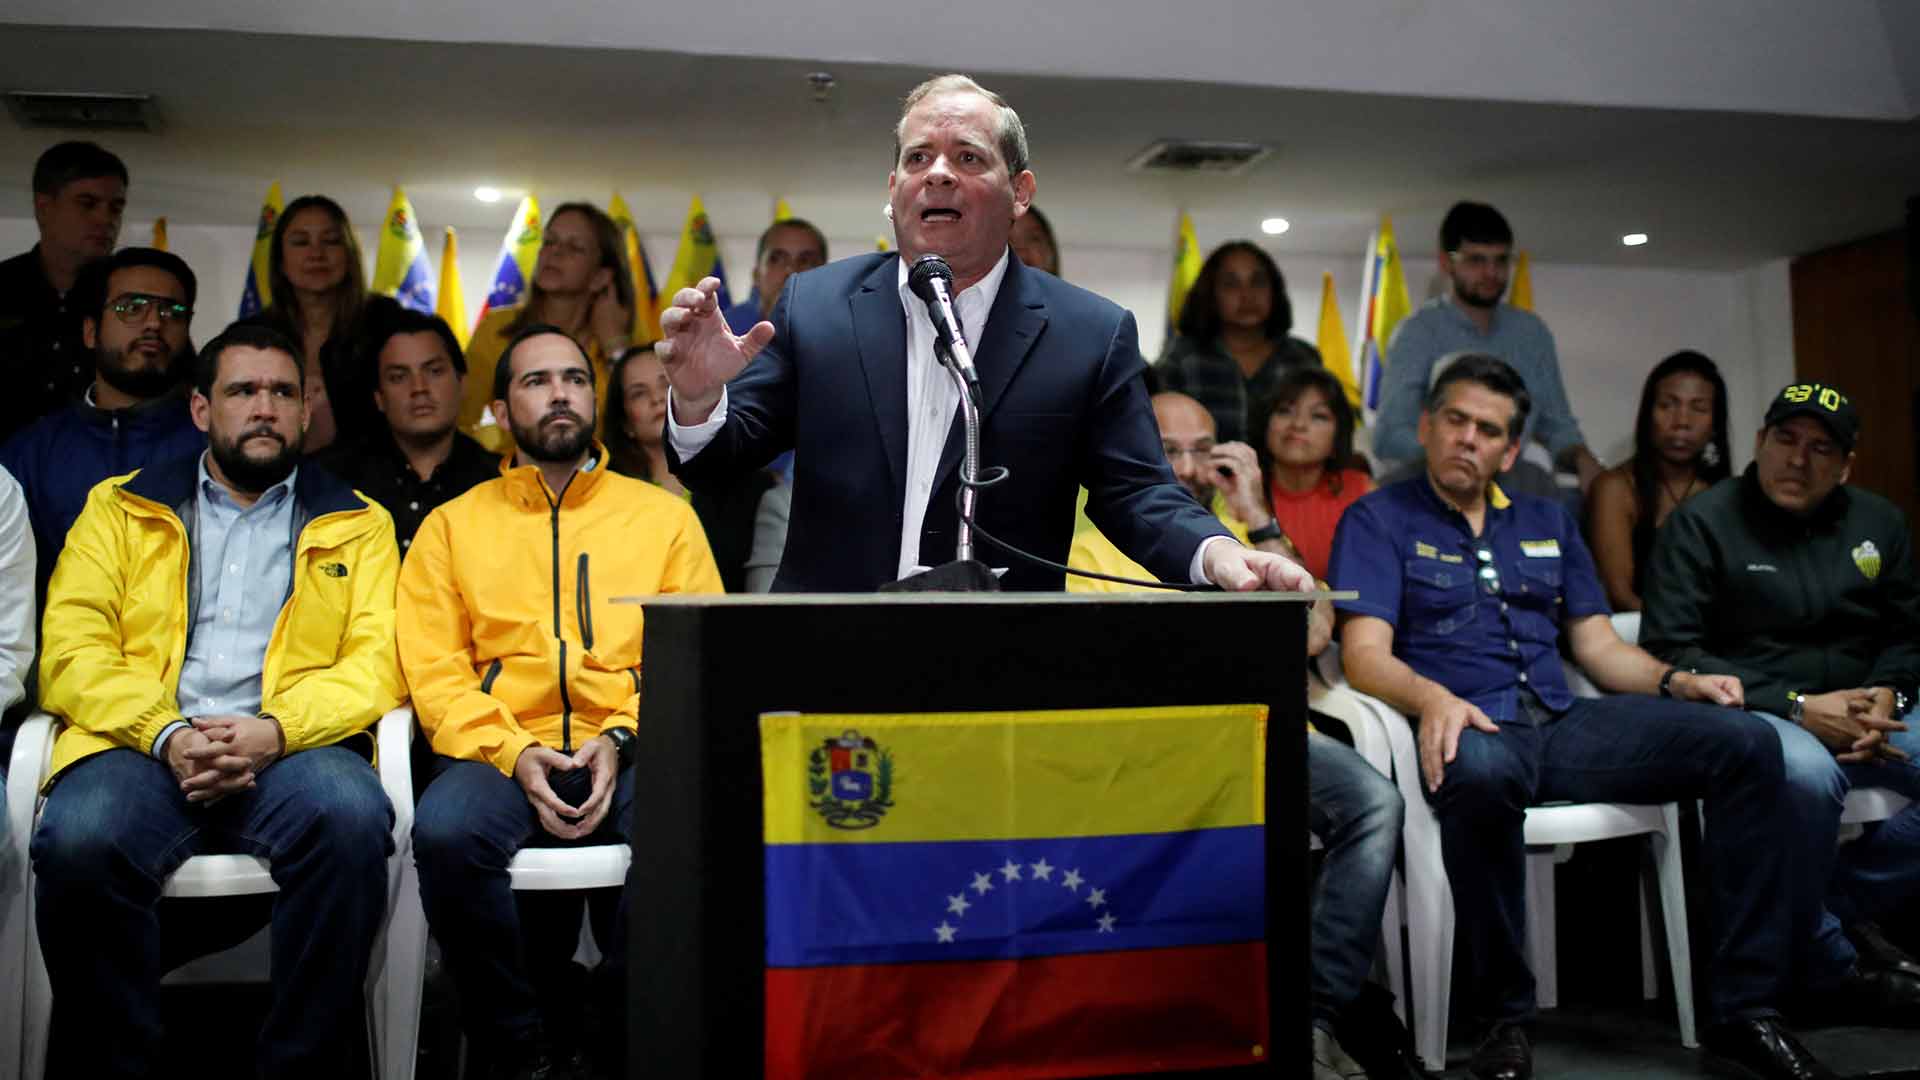 La oposición venezolana rechaza ir a elecciones presidenciales sin garantías